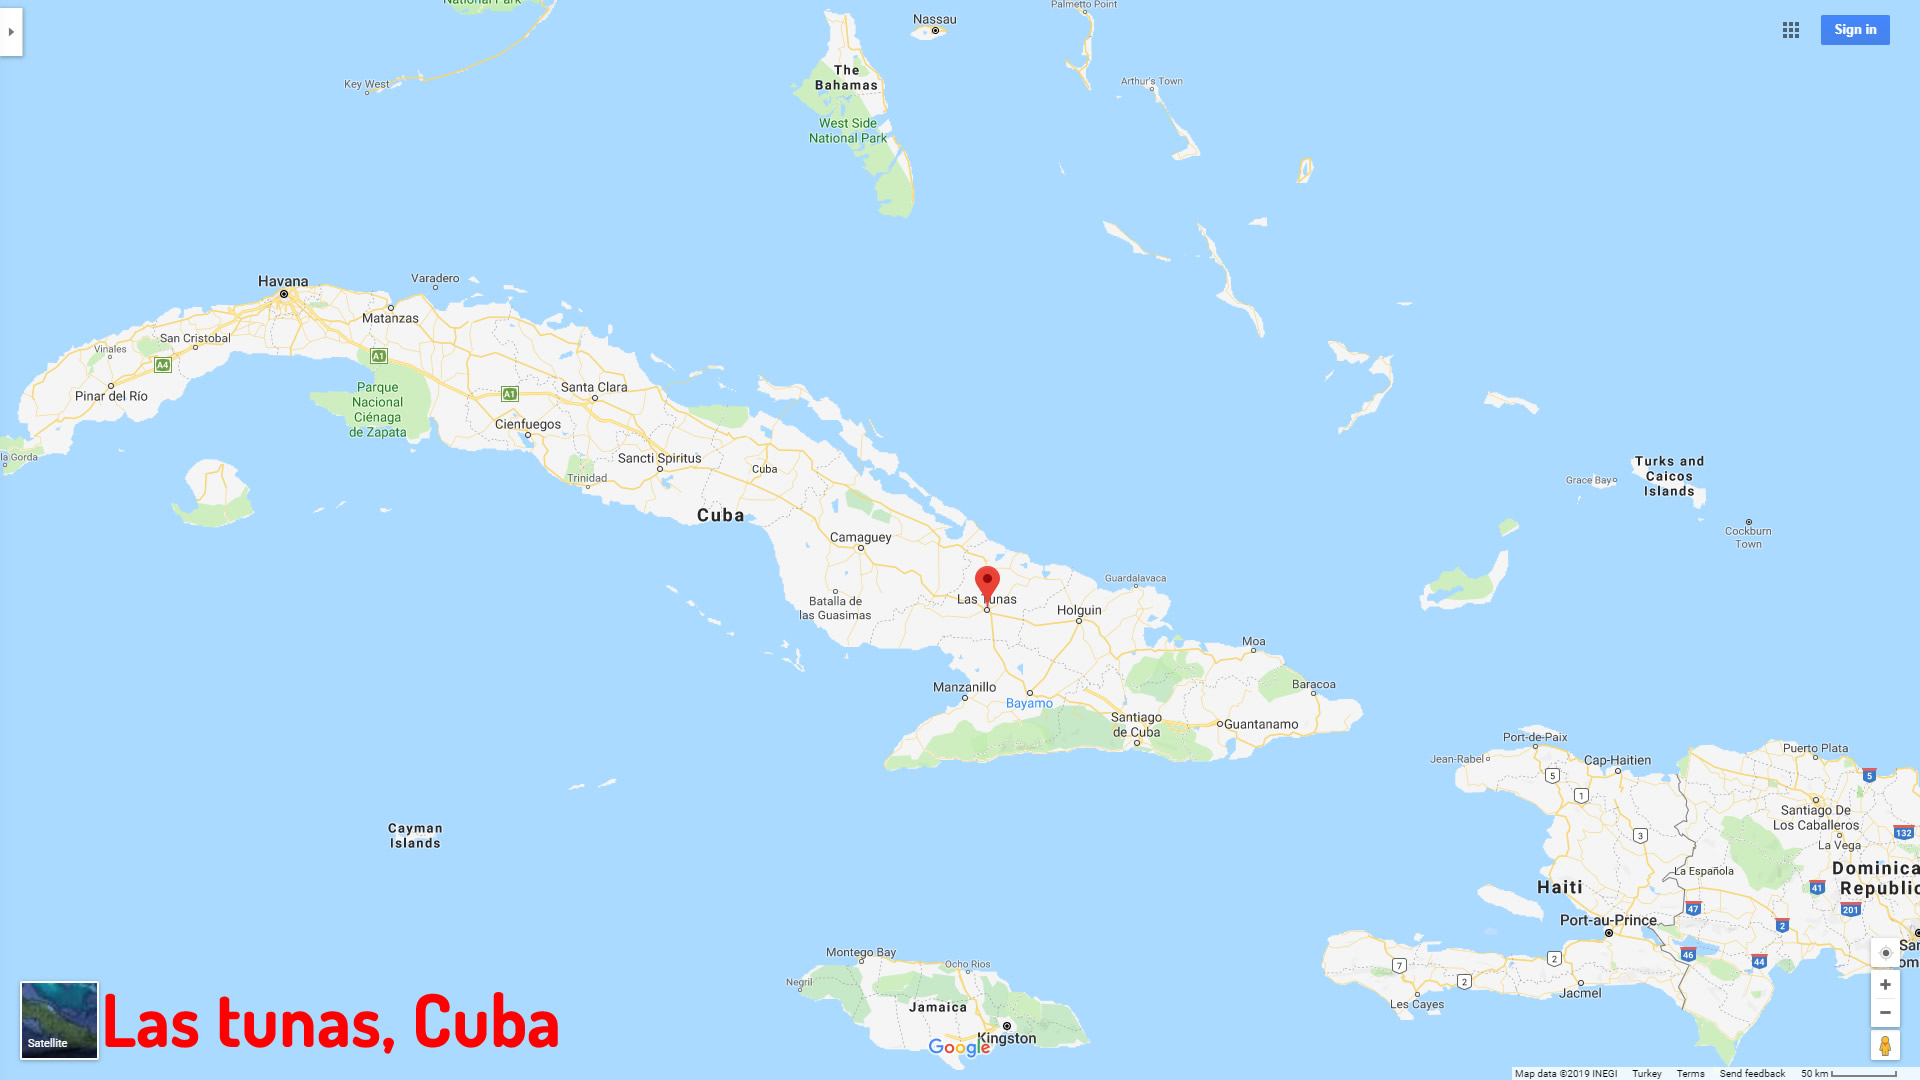 Las tunas map Cuba